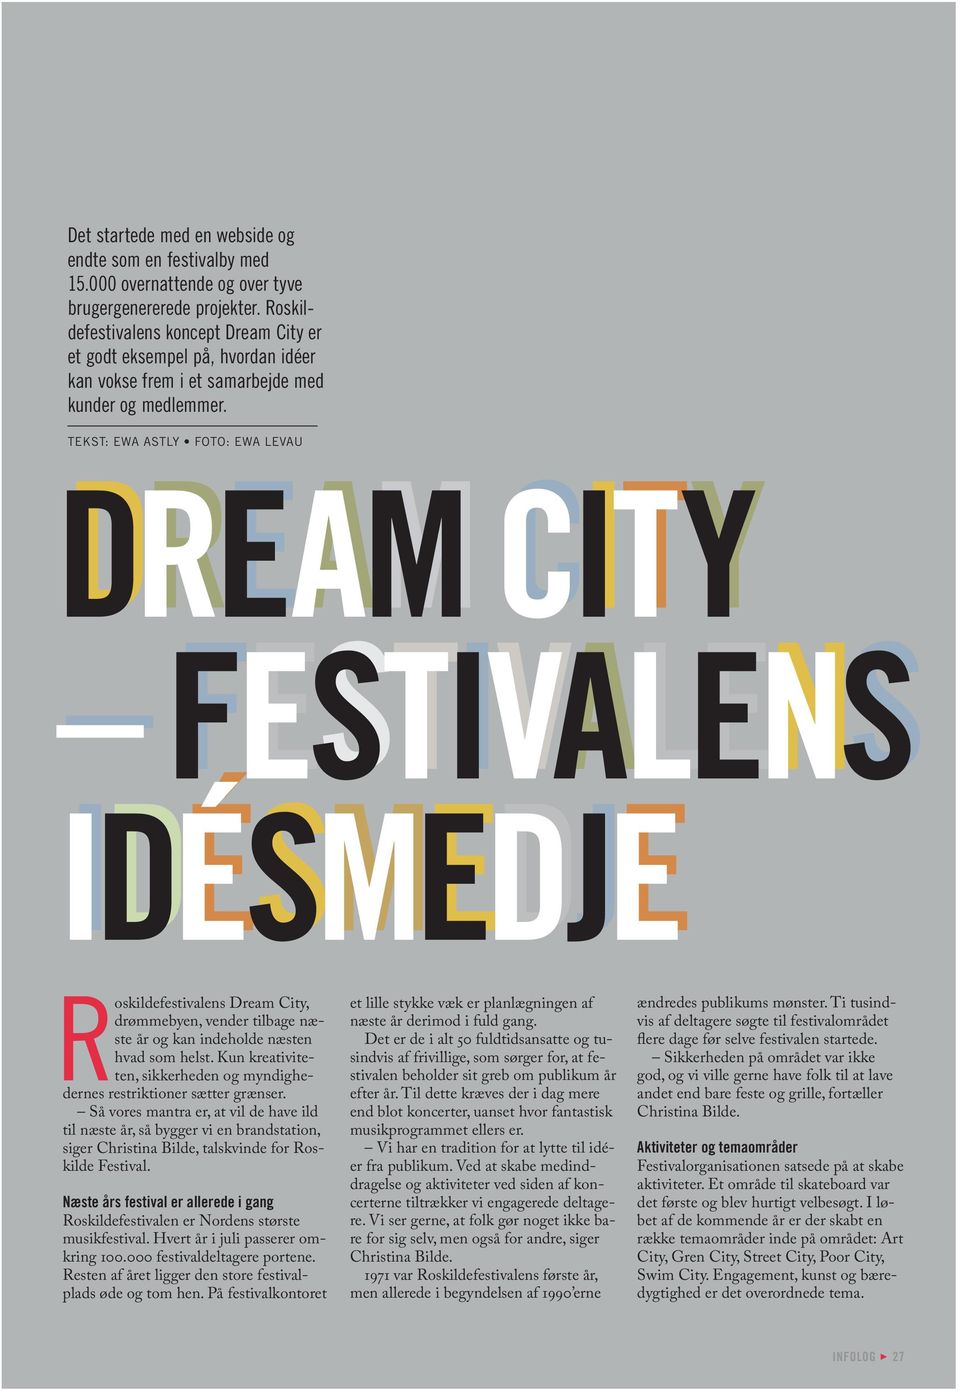 tekst: ewa astly foto: ewa levau dream city festivalens idésmedje idésmedje Roskildefestivalens Dream City, drømmebyen, vender tilbage næste år og kan indeholde næsten hvad som helst.